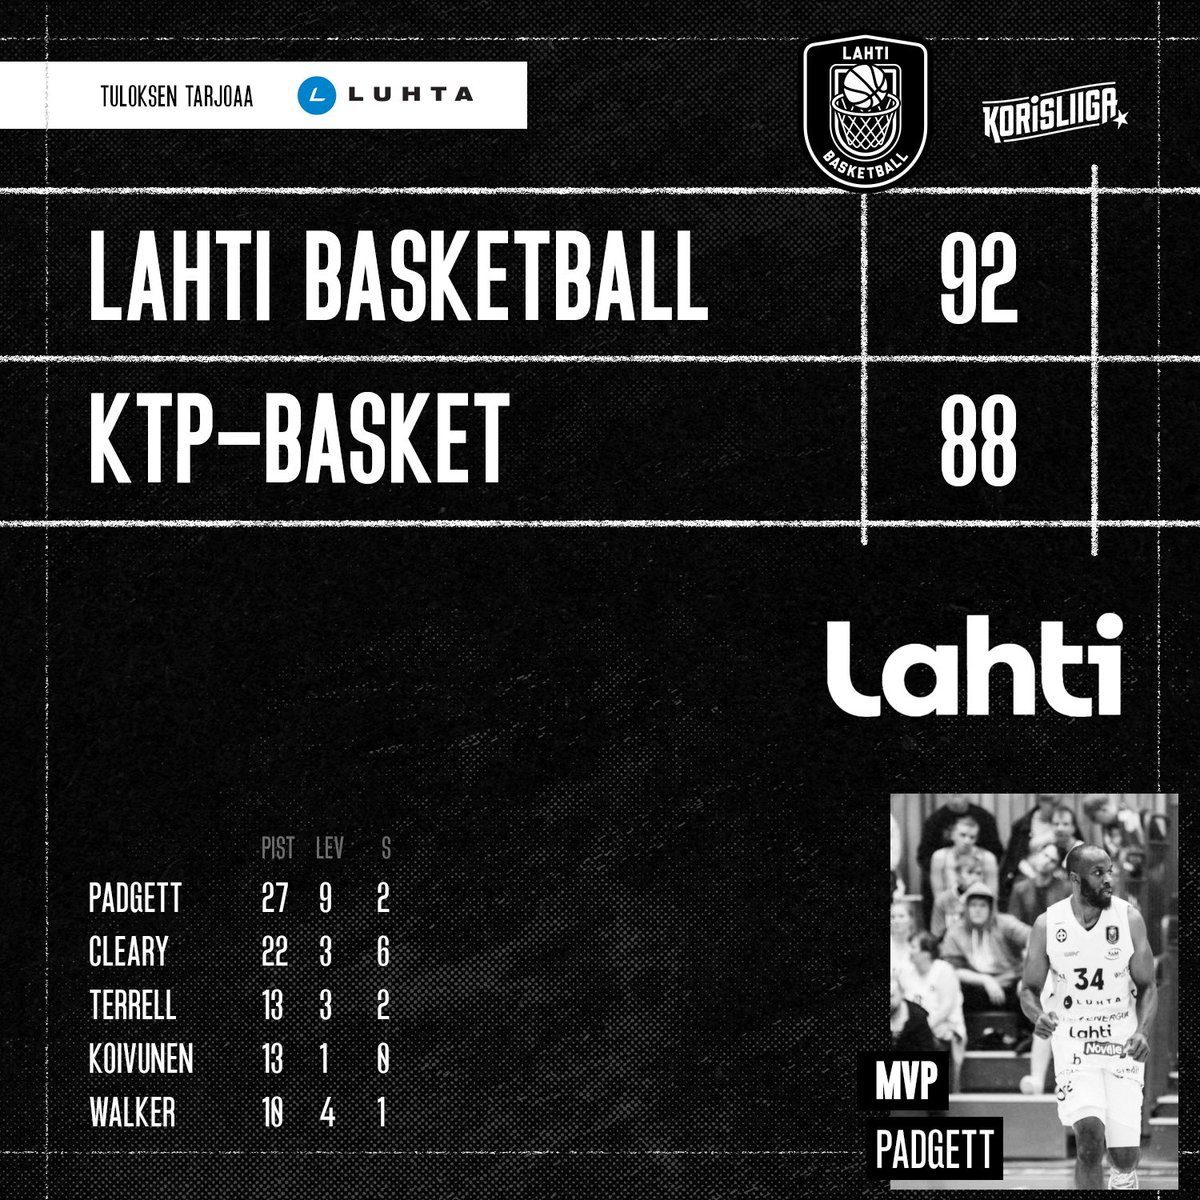 🖤 1620 katsojaa 
🖤 Voitto 
🖤 Kiitos @LahdenKaupunki 

👉🏻 Tuloksen tarjoaa Luhta. 

#lahtibasketball
#korisliiga